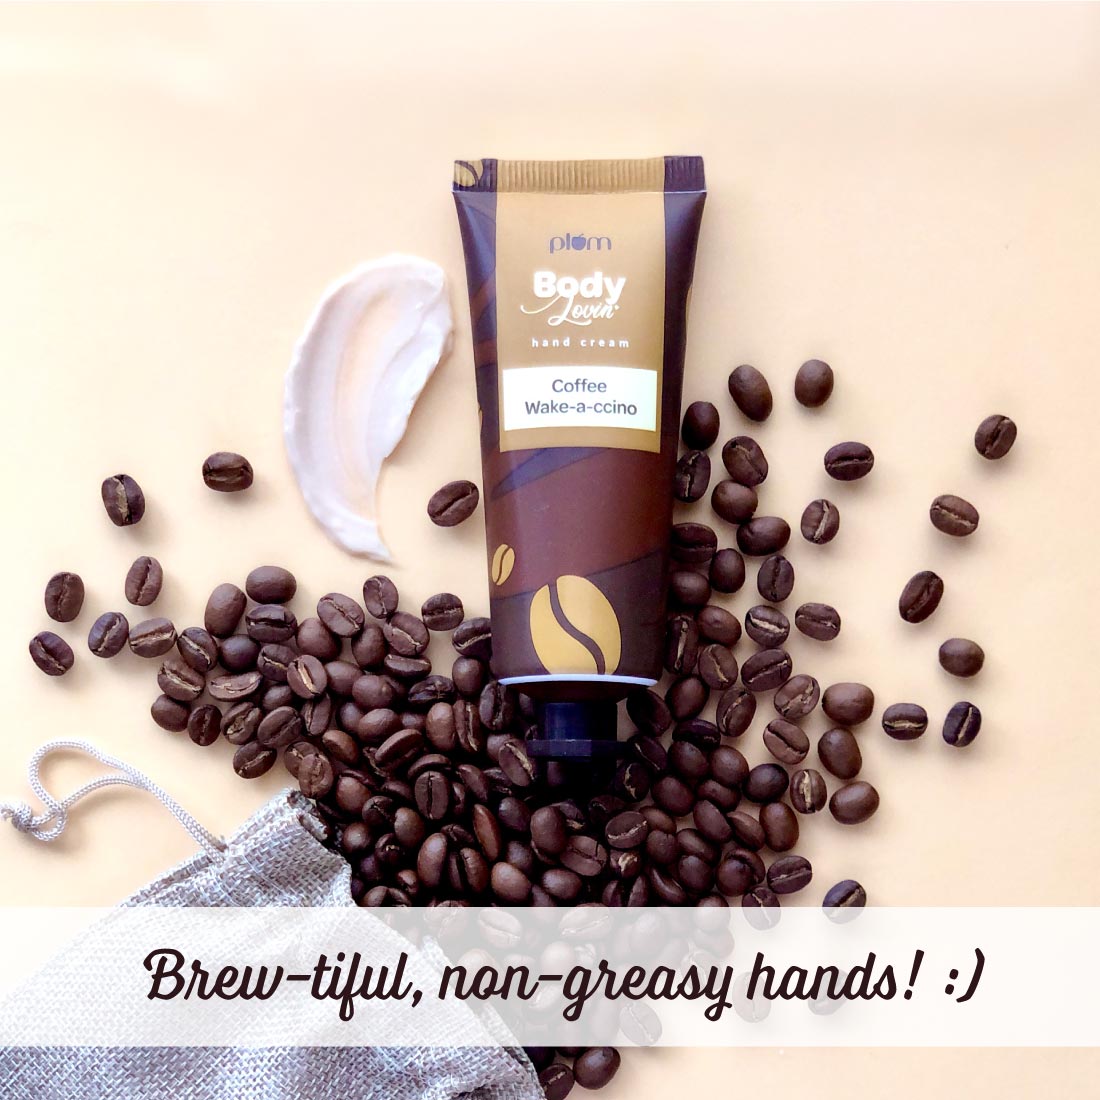 Plum BodyLovin' Coffee Wake-a-ccino Hand Cream